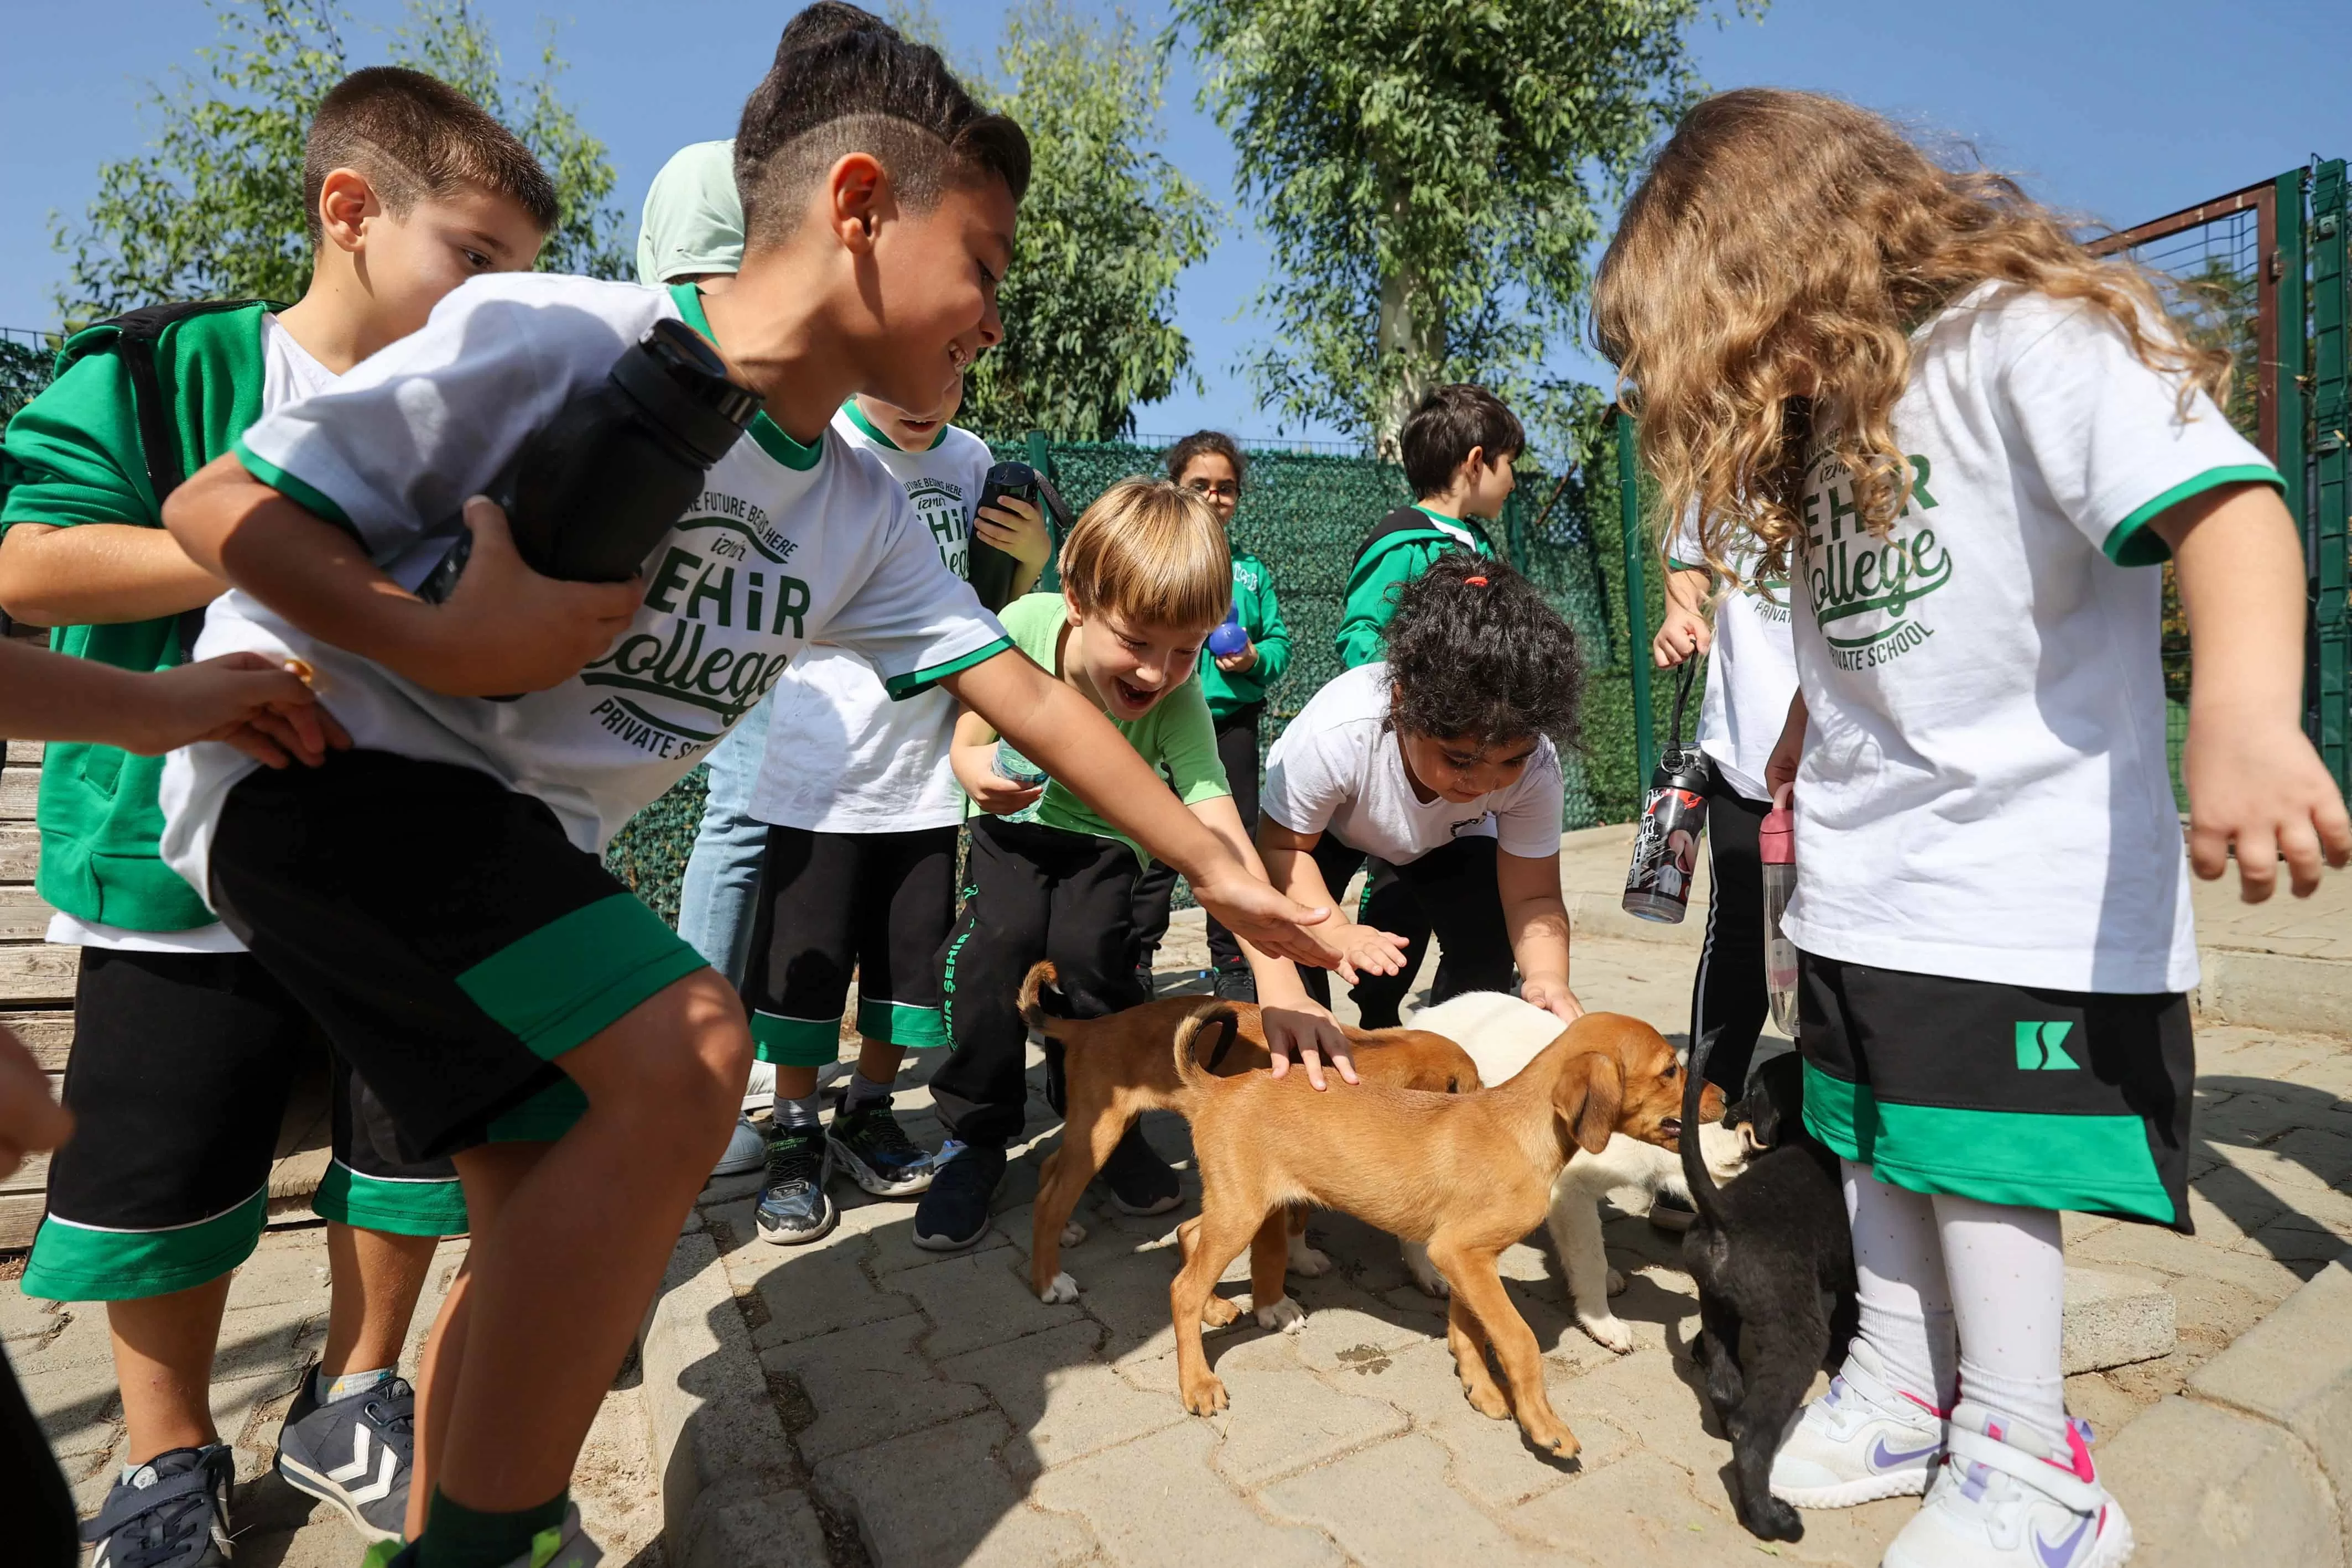 Buca Belediyesi, İzmir'deki ilkokul öğrencilerini Sokak Hayvanları Rehabilitasyon Merkezi'ne götürerek hayvan sevgisi ve çevre bilinci aşılayan özel bir projeyi başarıyla yürütüyor. 